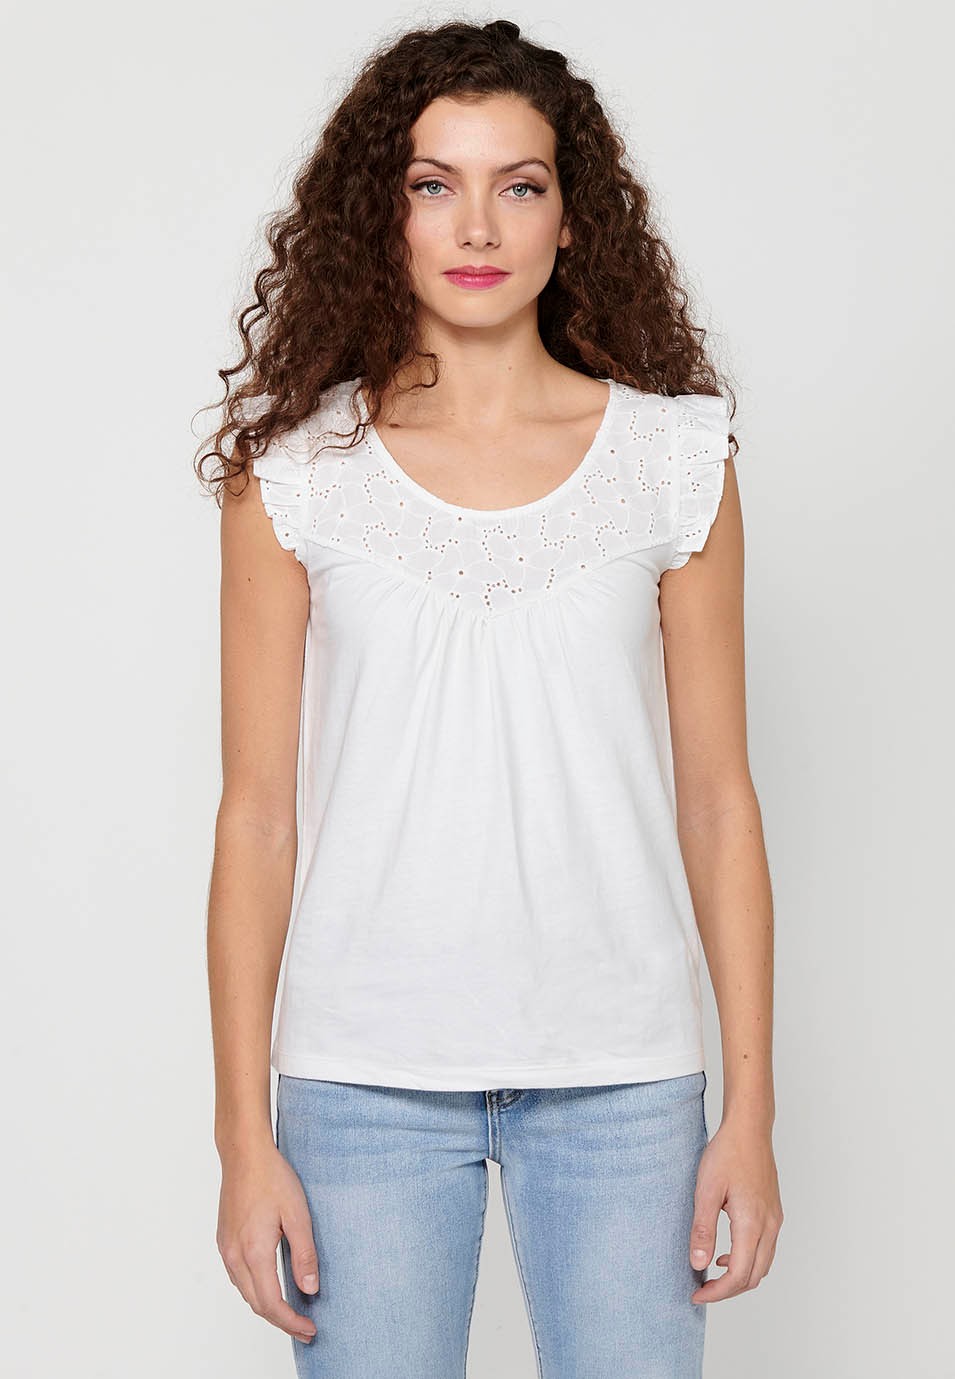 T-shirt femme blanc col rond manches courtes avec volant sur les épaules 4